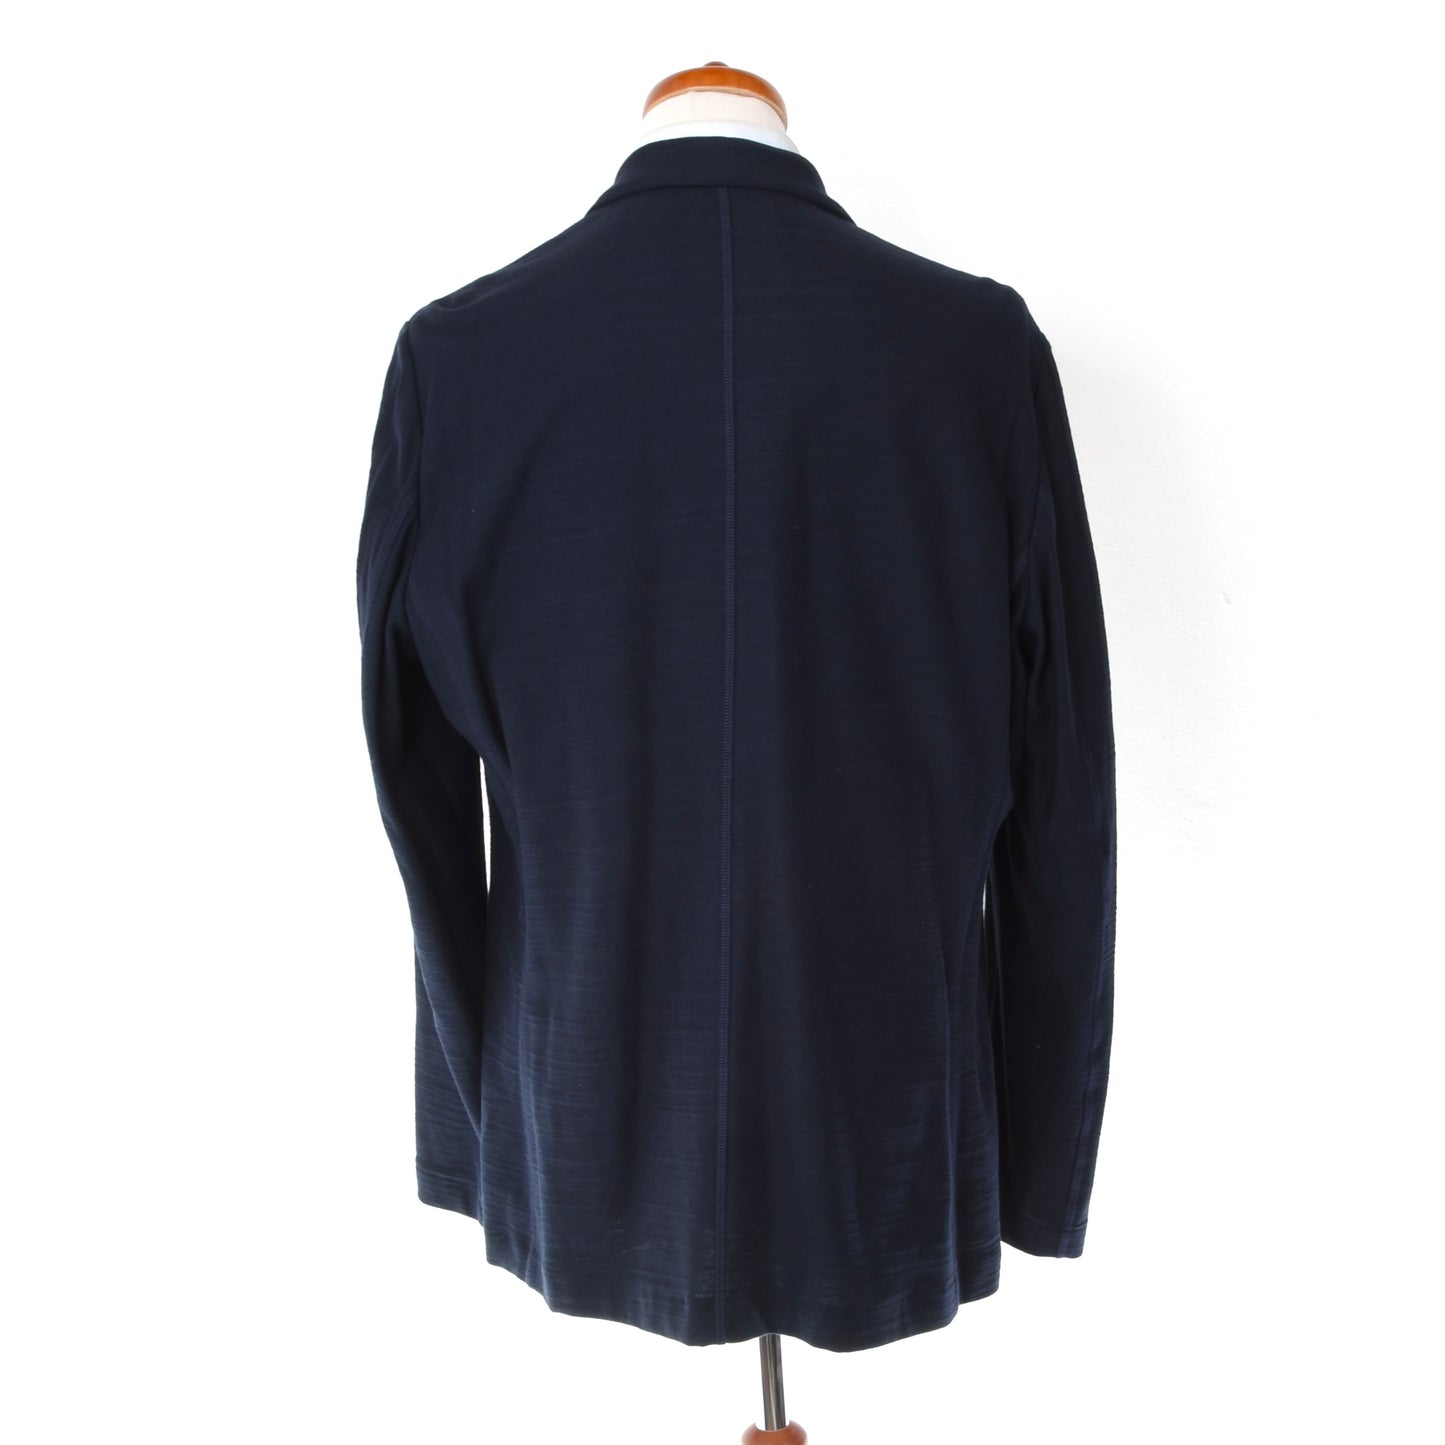 Falconeri Cotton Jacket Chest ca. 58cm - Navy Blue